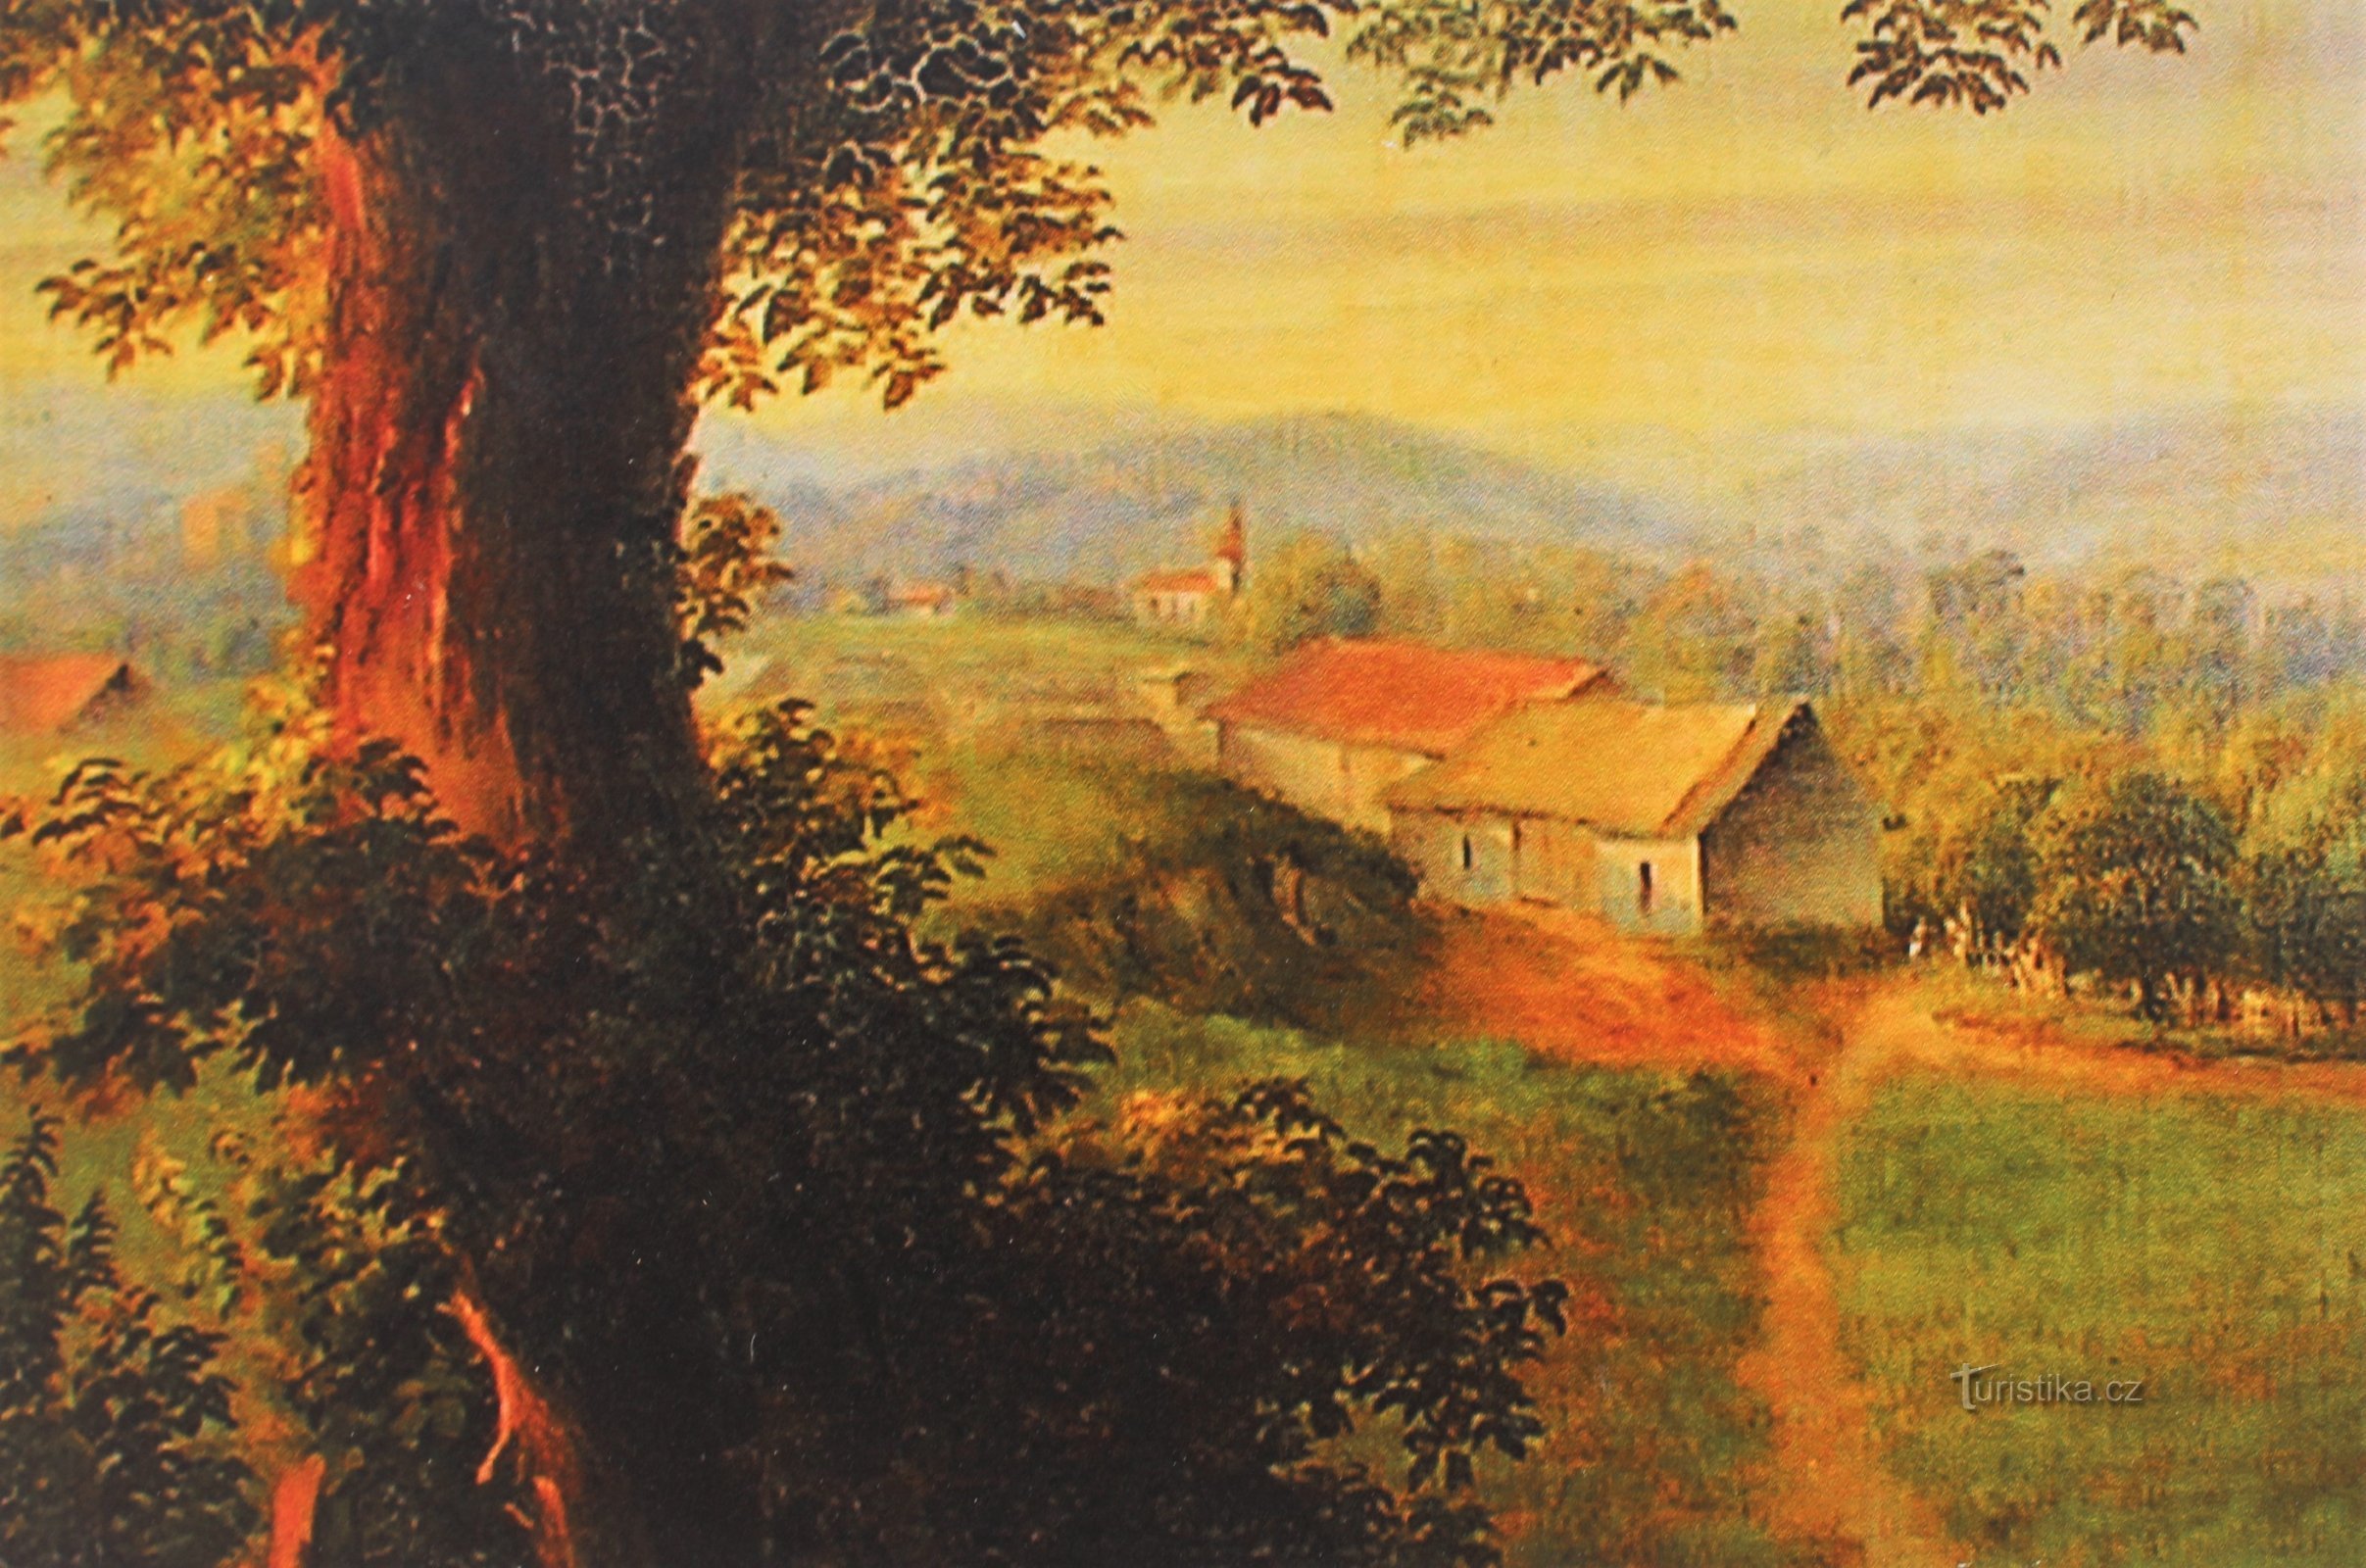 Čeladice schuren en daarachter de fundamenten van door water beschadigde huizen, uitsnede van een schilderij uit de 18e eeuw